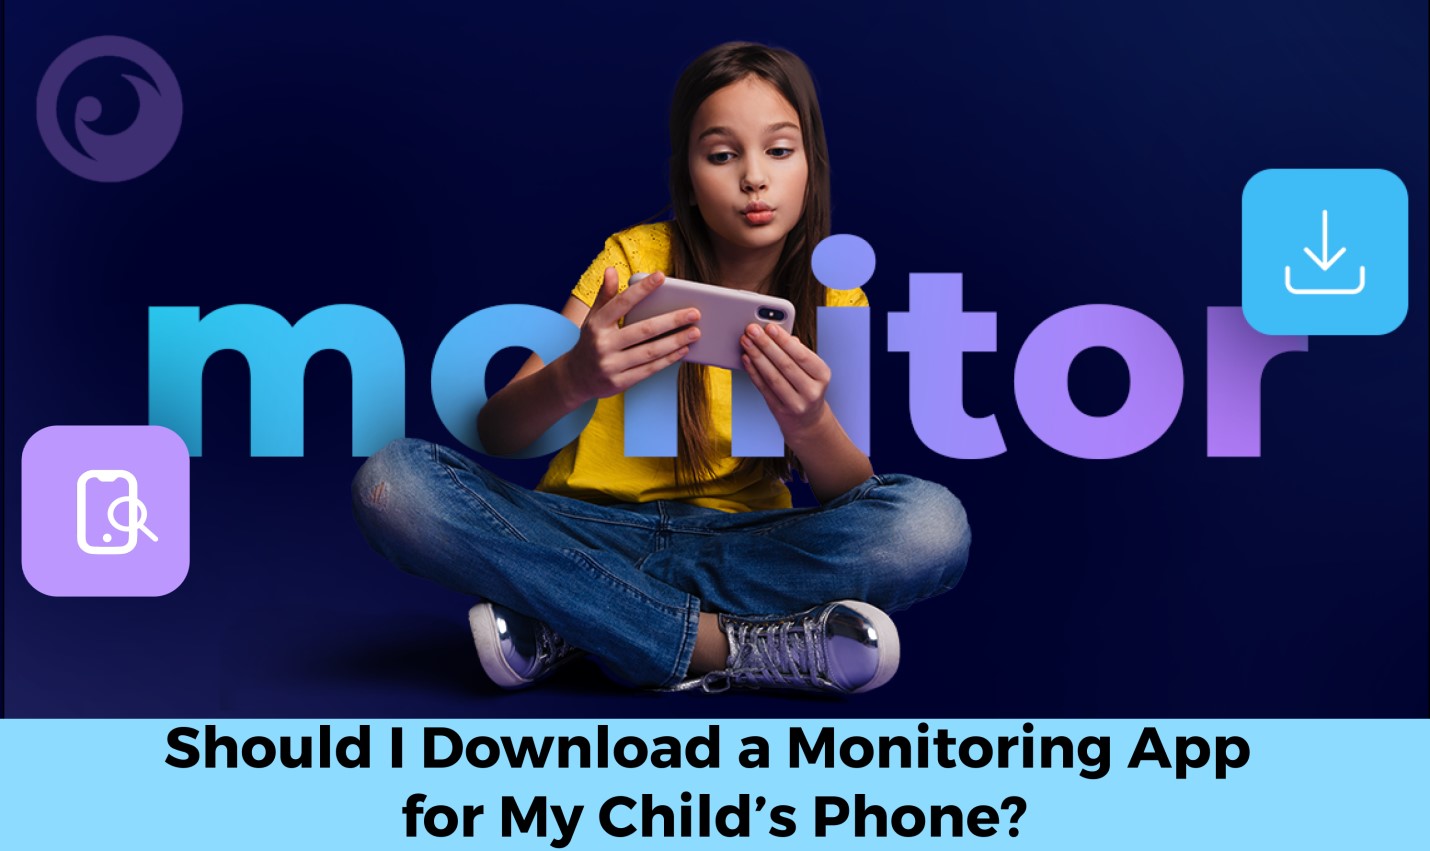 Чи варто мені завантажувати програму моніторингу для телефону моєї дитини? - зображення новин на imei.info